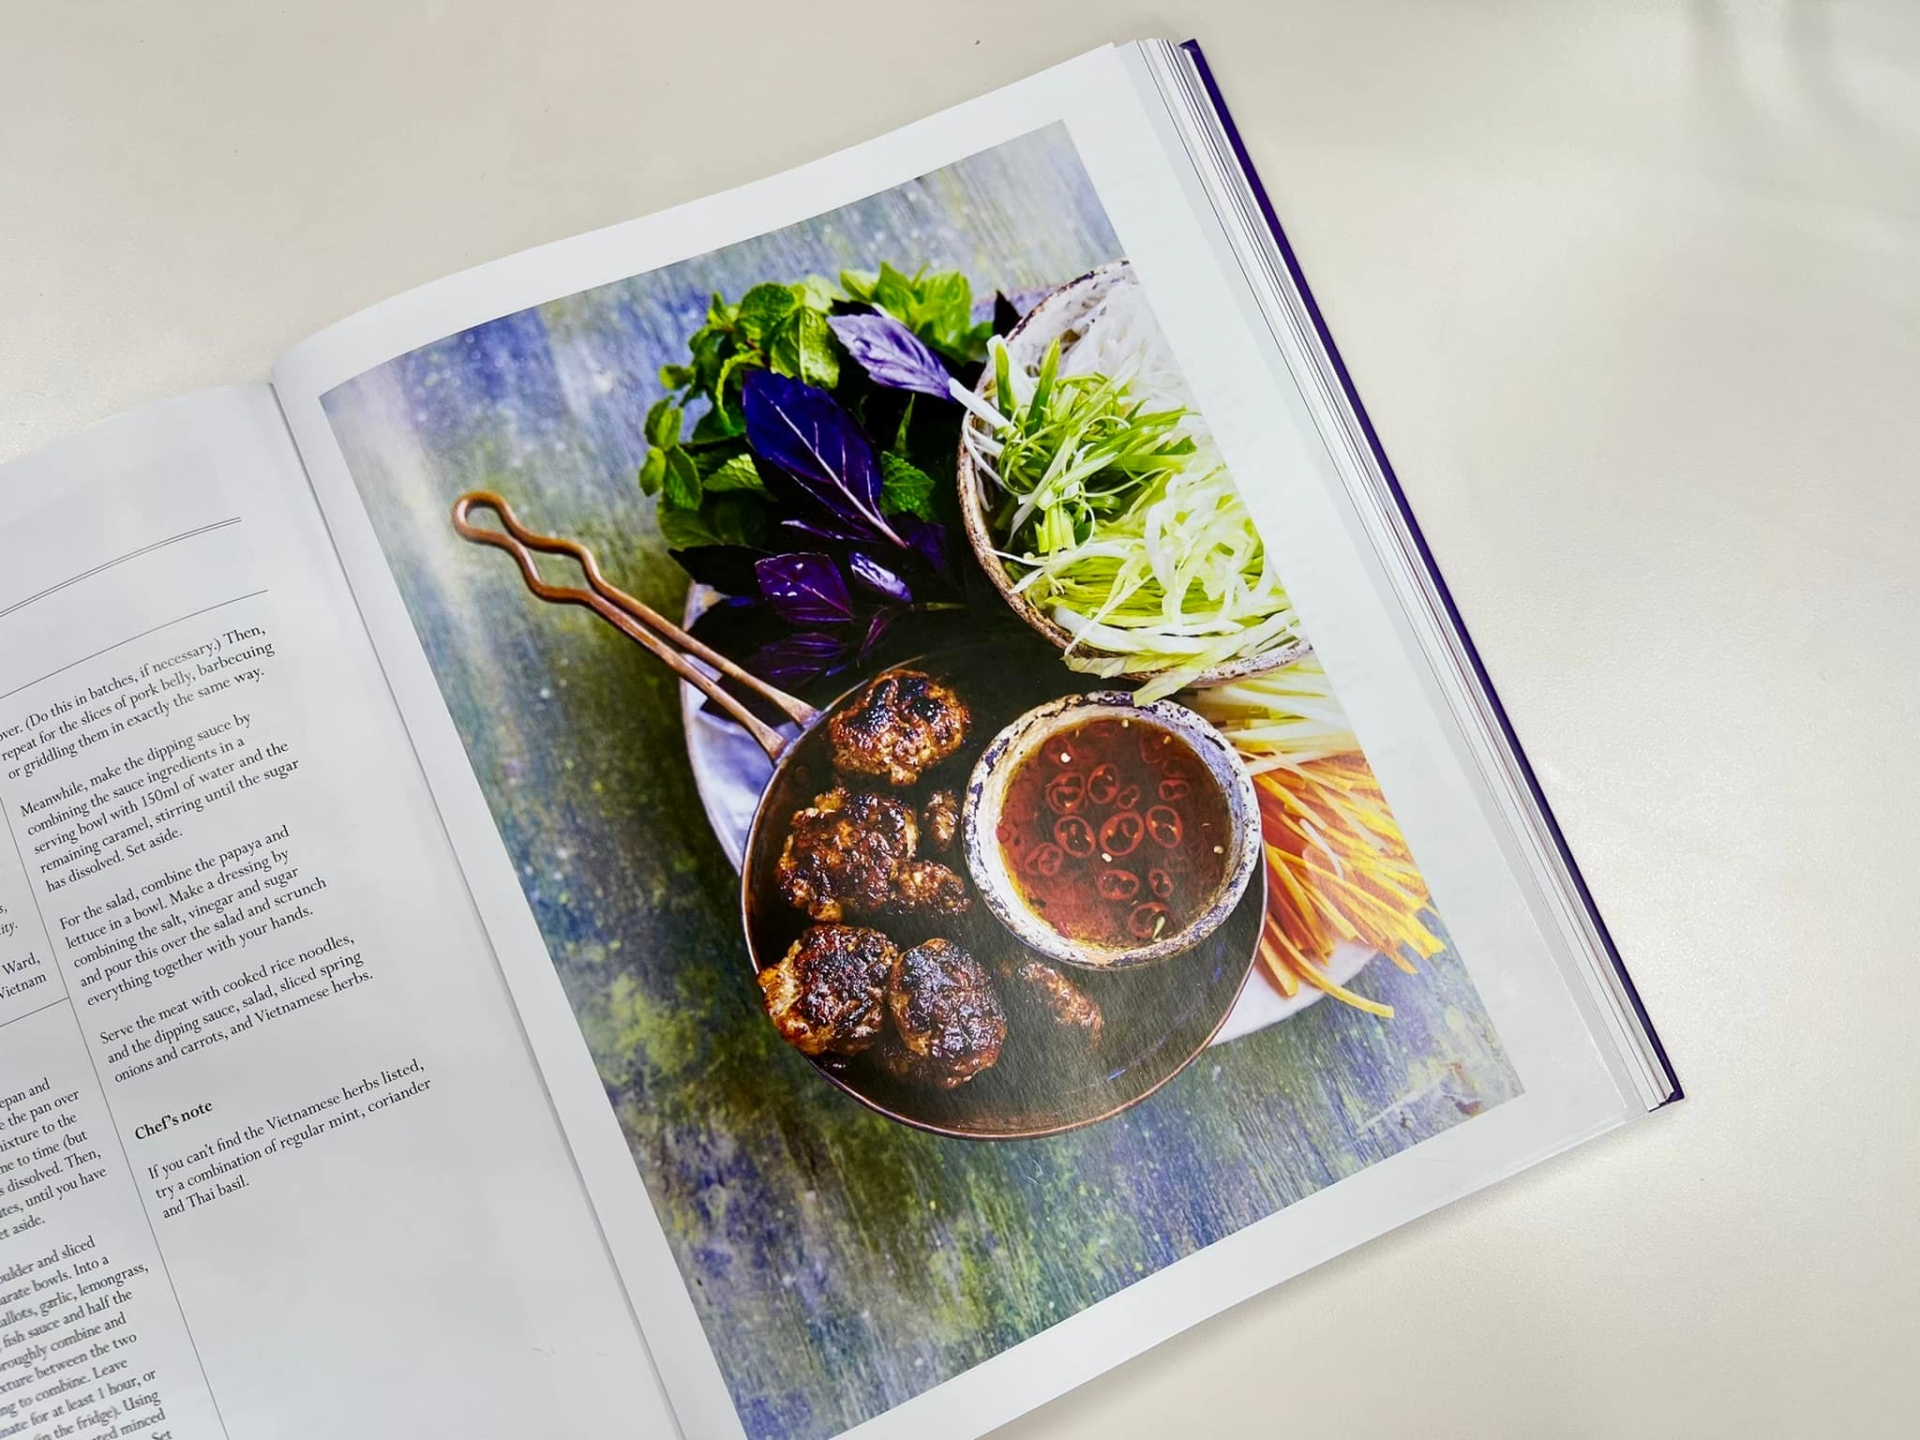 Bún chả Hà Nội được đưa vào sách dạy nấu ăn mừng Đại lễ Bạch kim của Nữ hoàng Anh - Ảnh 1